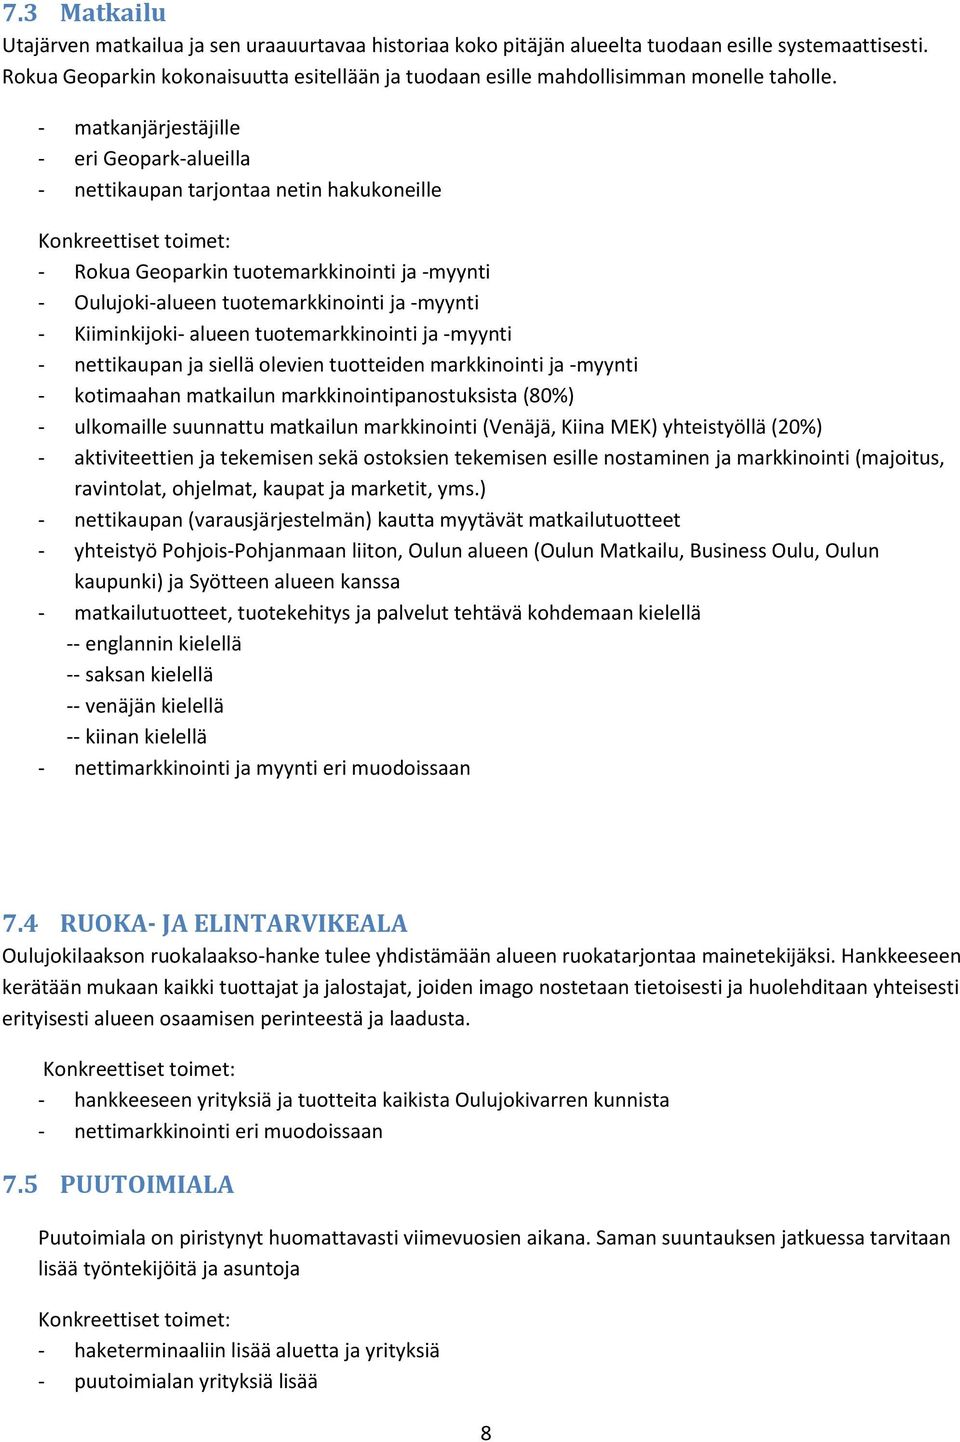 - matkanjärjestäjille - eri Geopark-alueilla - nettikaupan tarjontaa netin hakukoneille - Rokua Geoparkin tuotemarkkinointi ja -myynti - Oulujoki-alueen tuotemarkkinointi ja -myynti - Kiiminkijoki-